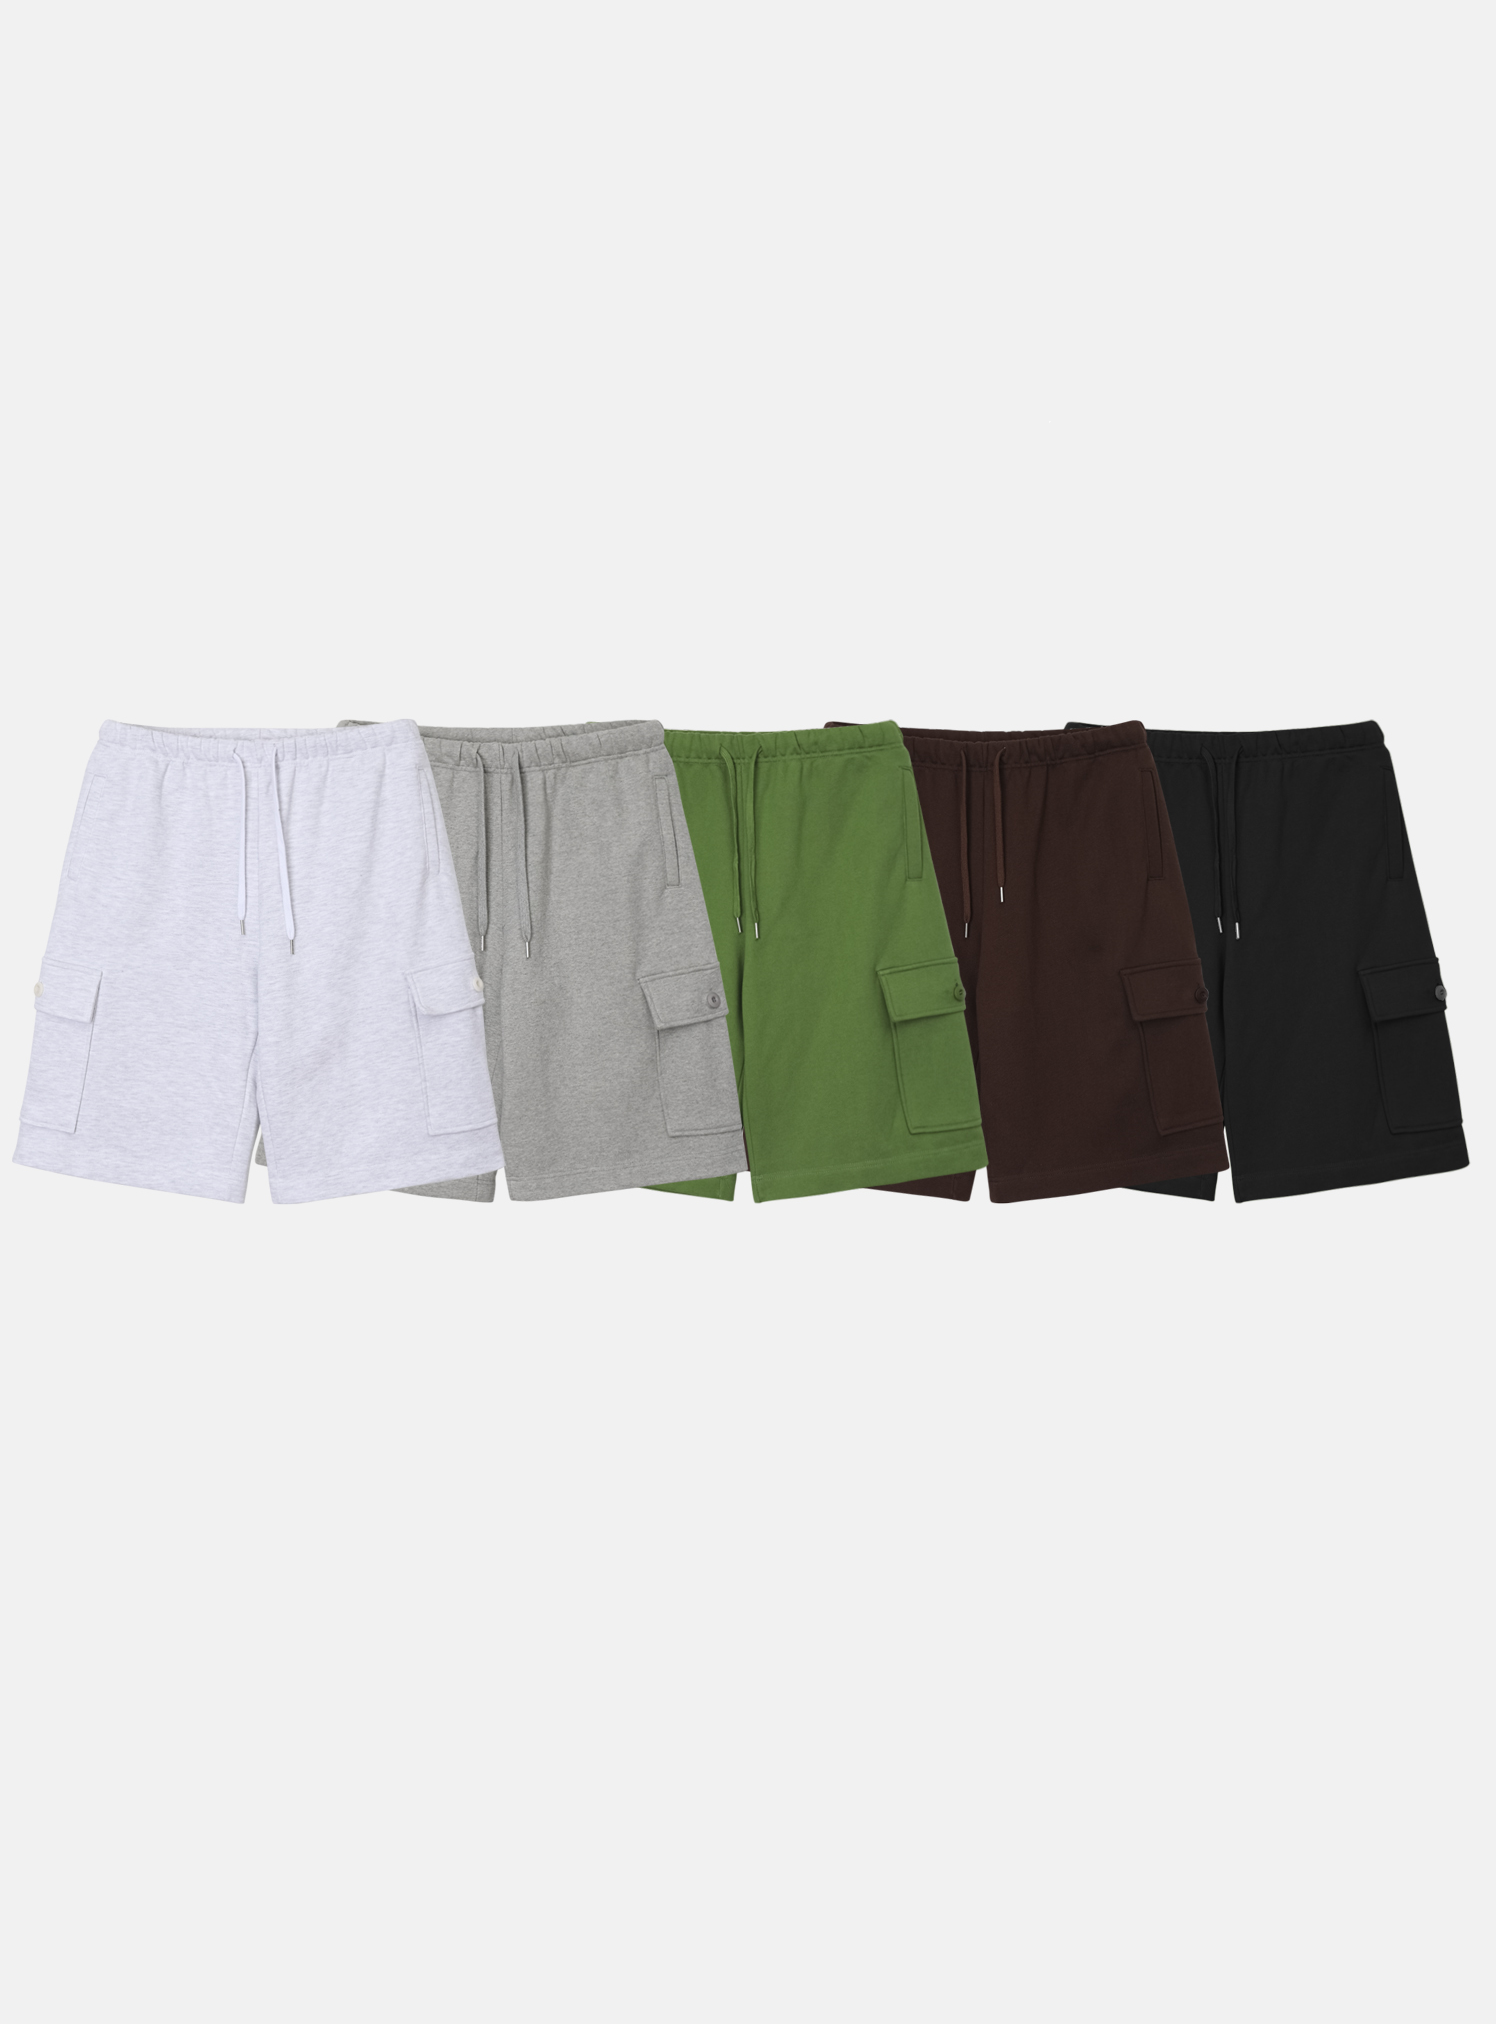 Heavy cargo shorts / 5 colors